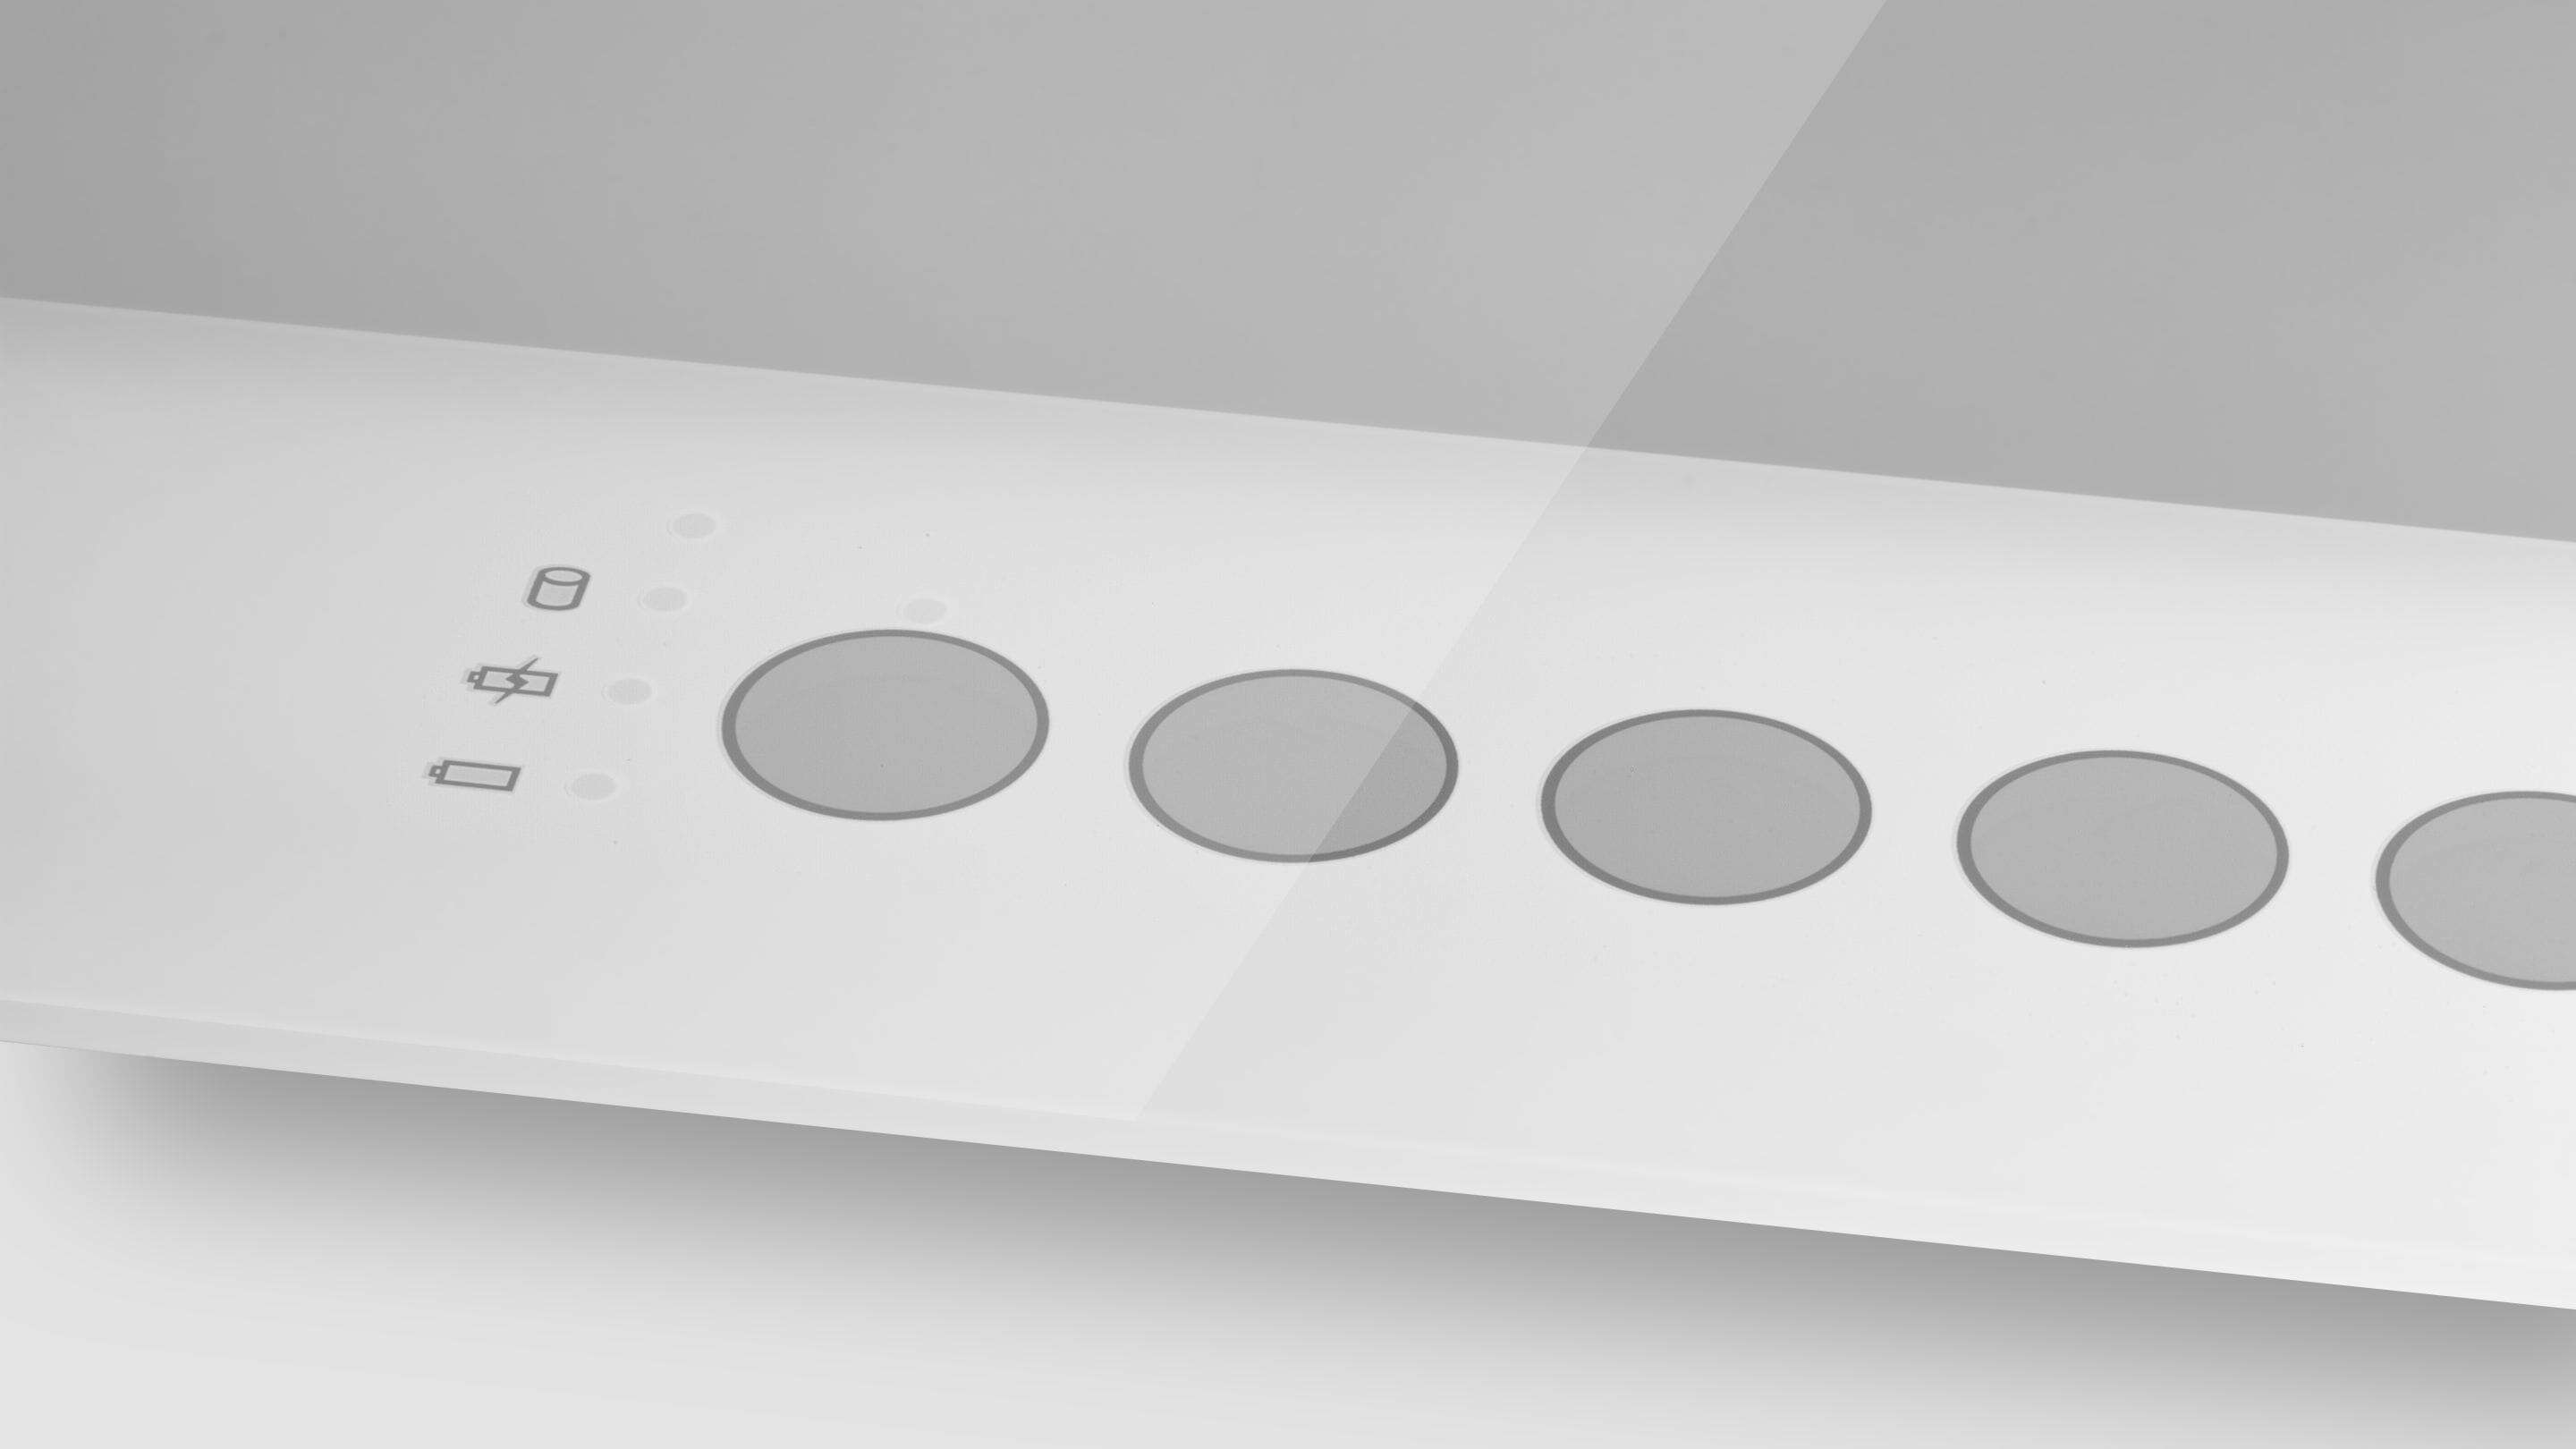 Сенсорный экран PCAP - кнопки со стеклянной печатью: белый прямоугольный объект с кругами на нем